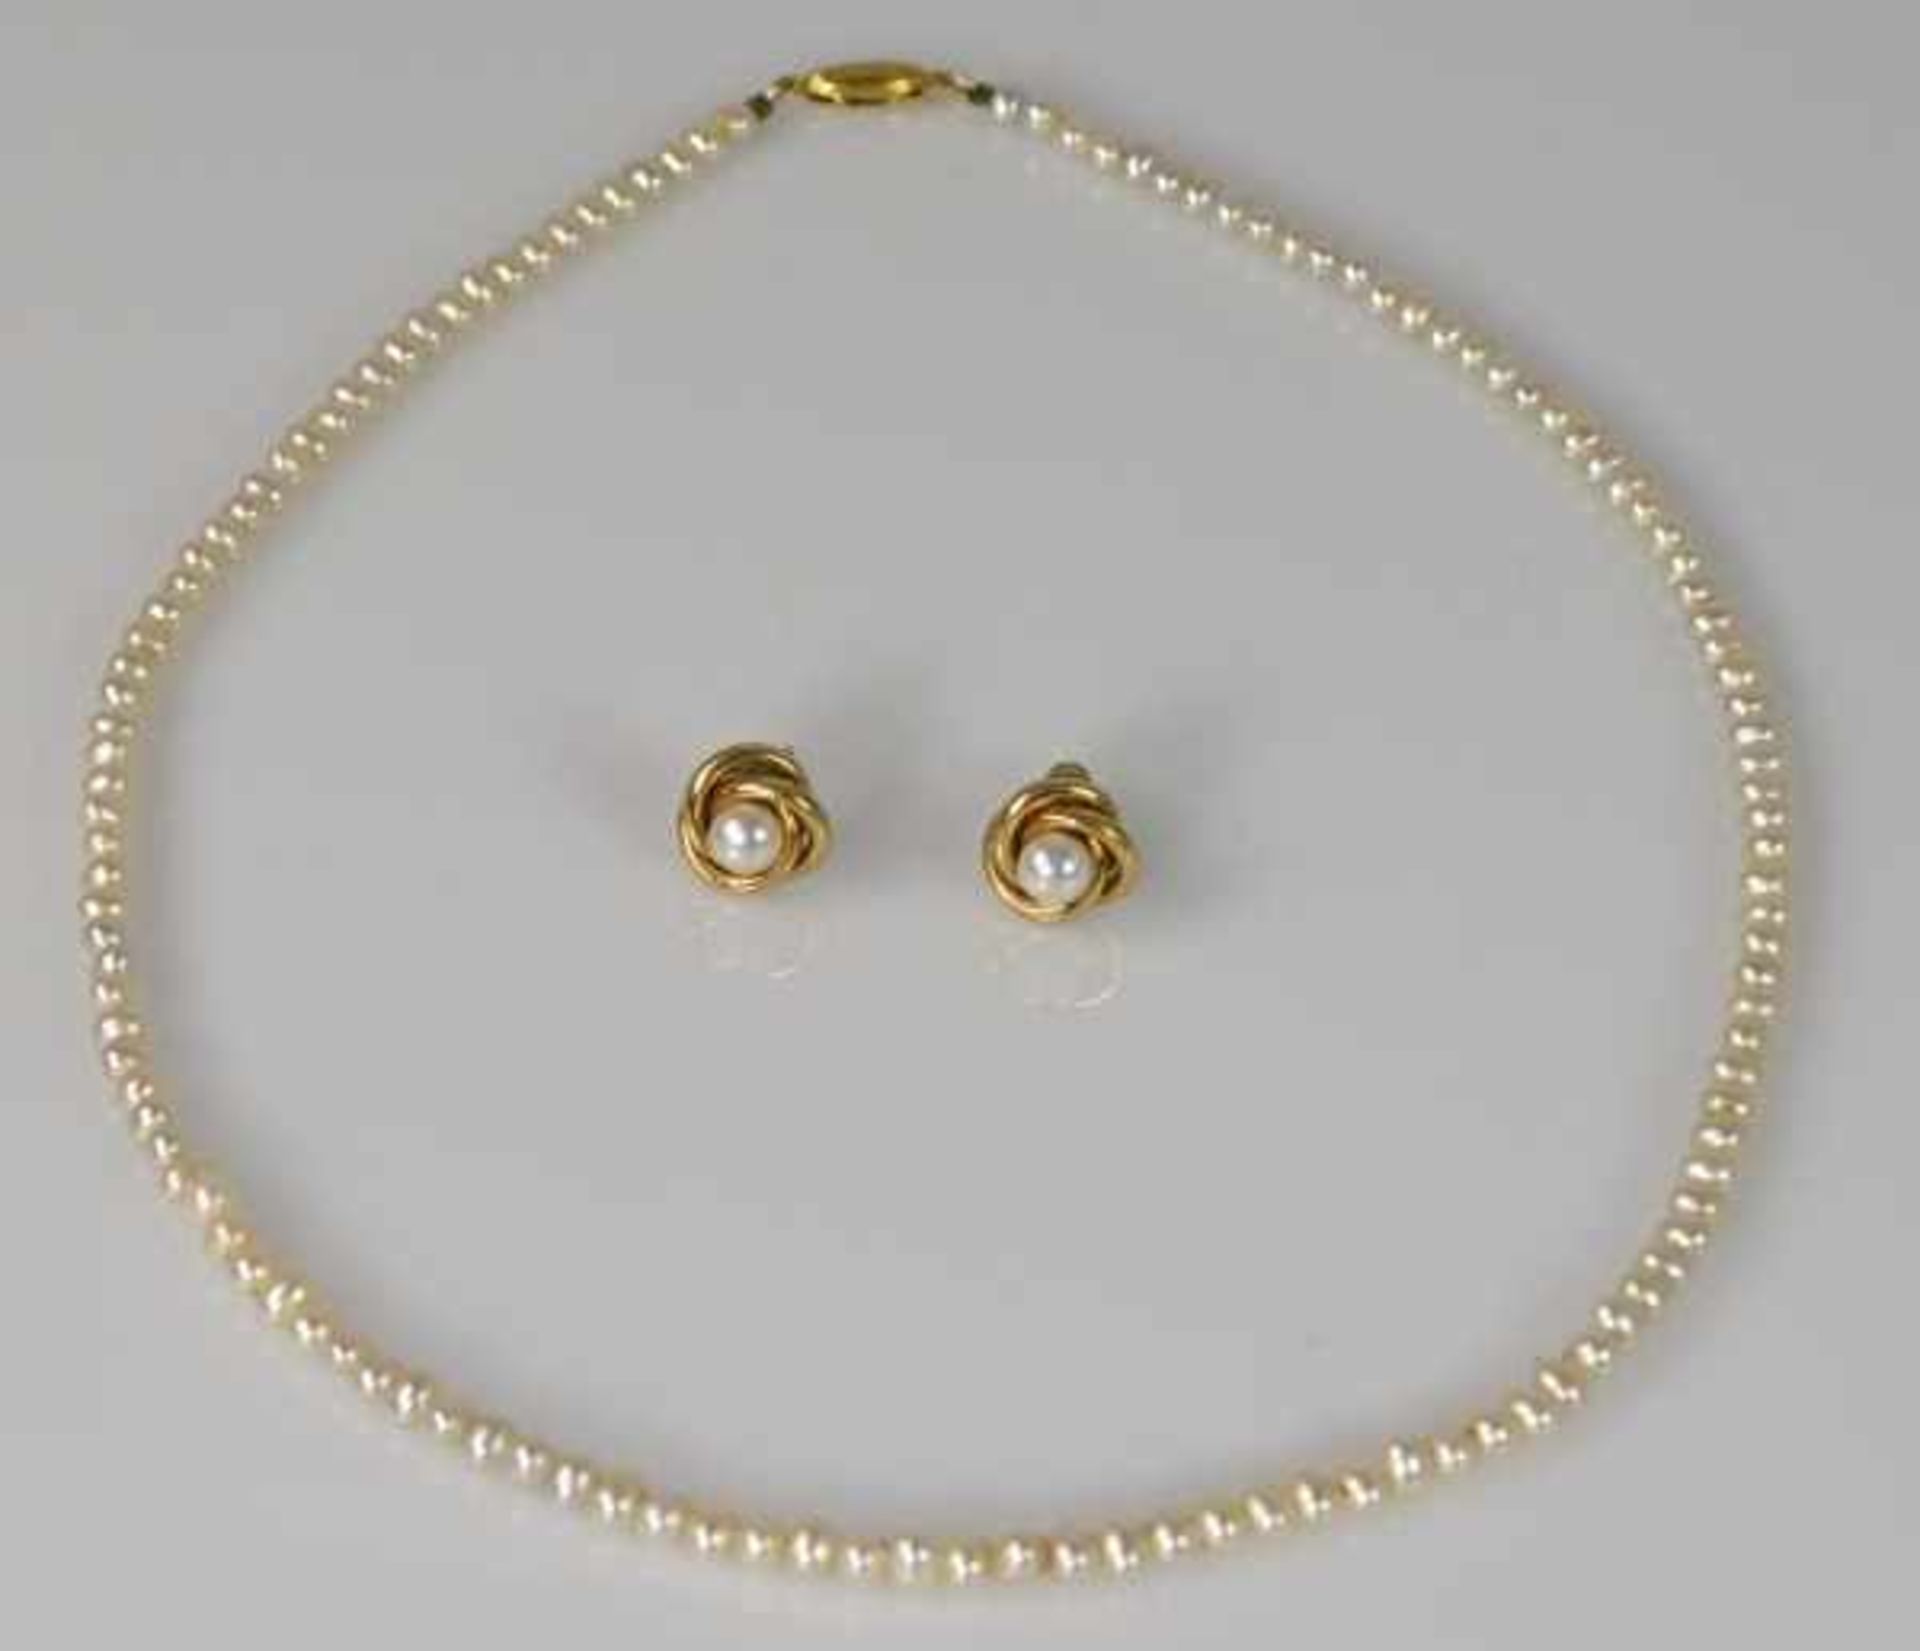 FEINE PERLENKETTE kleine Perlen mit ovalem Goldverschluß 14ct, L 42cm und Paar Ohrstecker mit